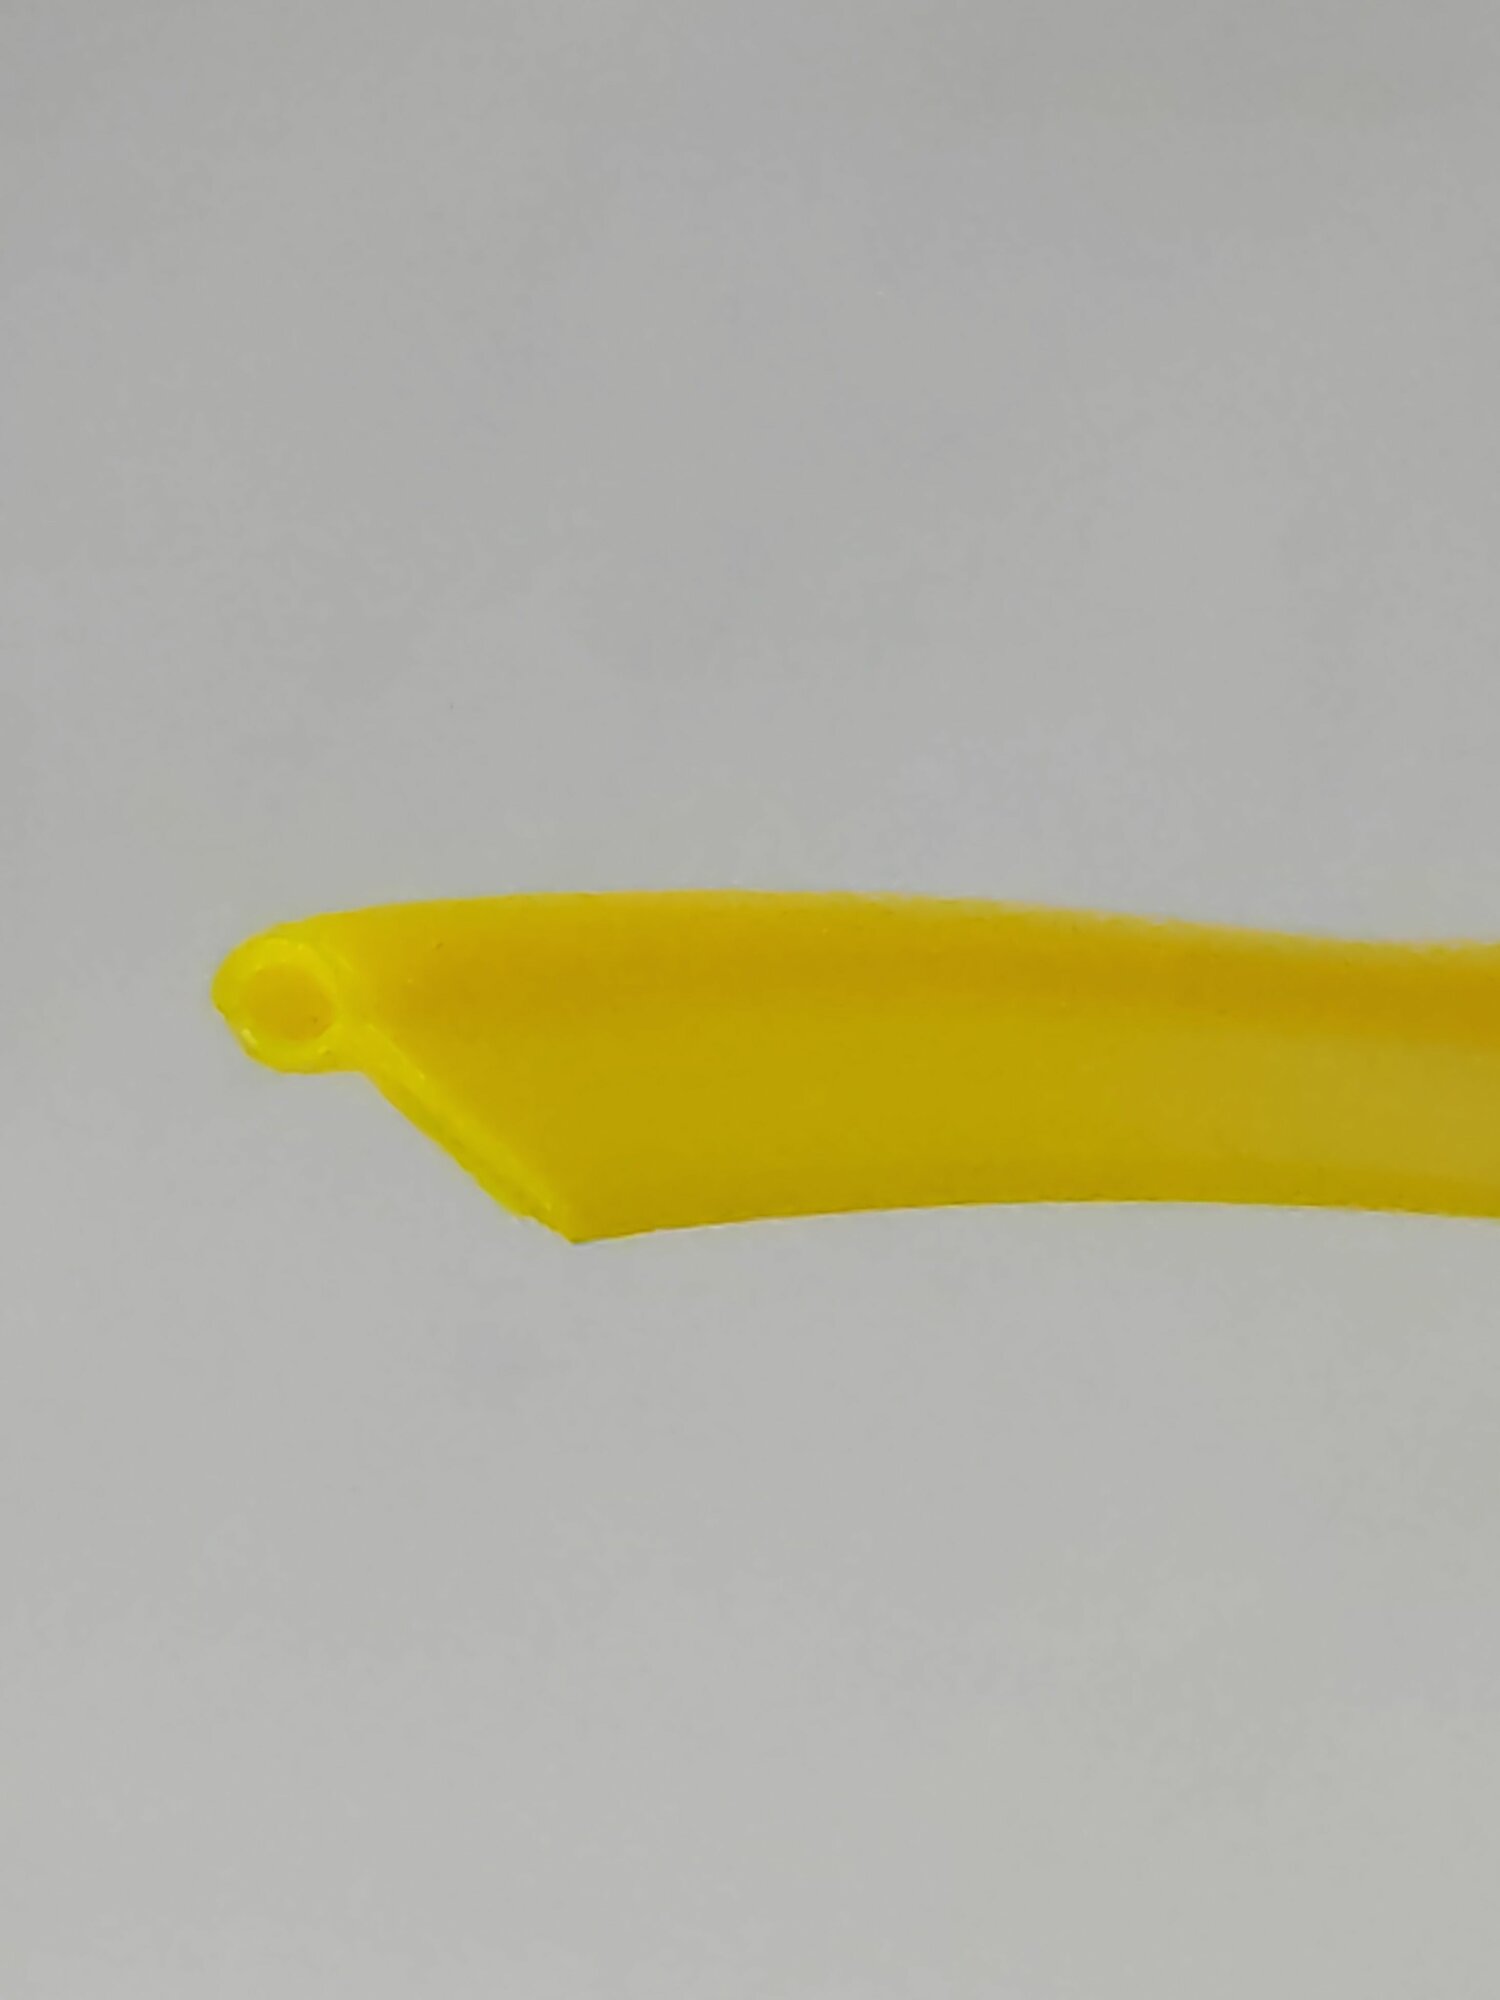 Кедер ( кант жилка шнек) для сумок авточехлов и одежды намотка 5м желтый(лимон)/размер: ширина головки 31мм; длина юбки 5.5мм